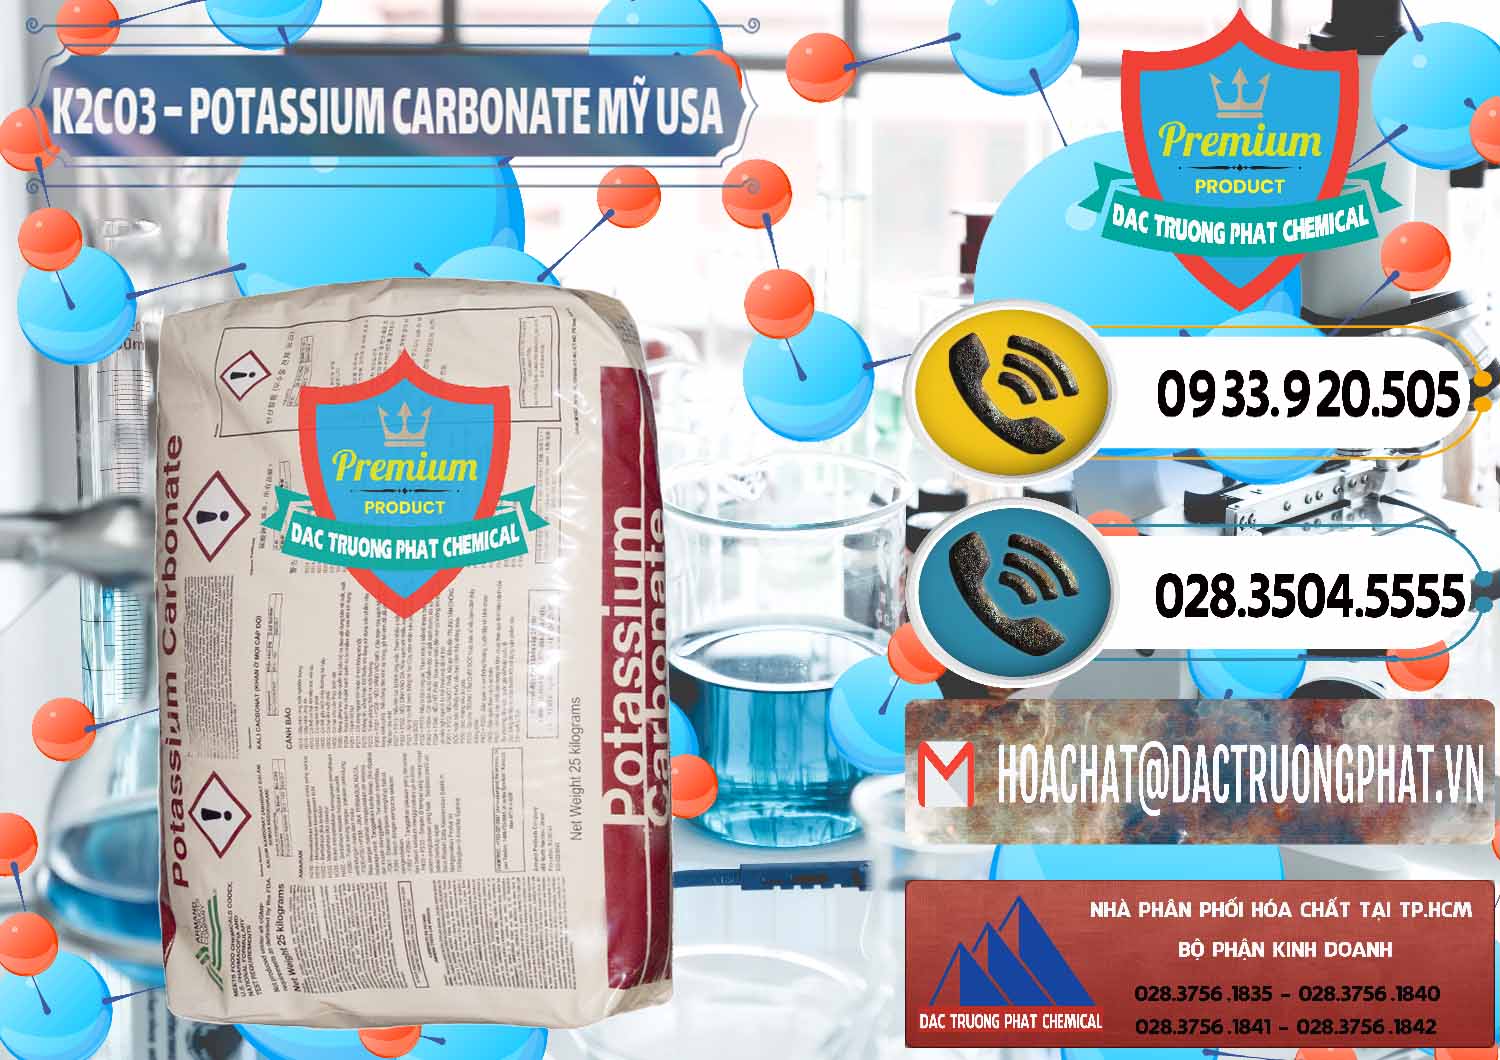 Công ty chuyên phân phối _ bán K2Co3 – Potassium Carbonate Mỹ USA - 0082 - Công ty kinh doanh & phân phối hóa chất tại TP.HCM - hoachatdetnhuom.vn